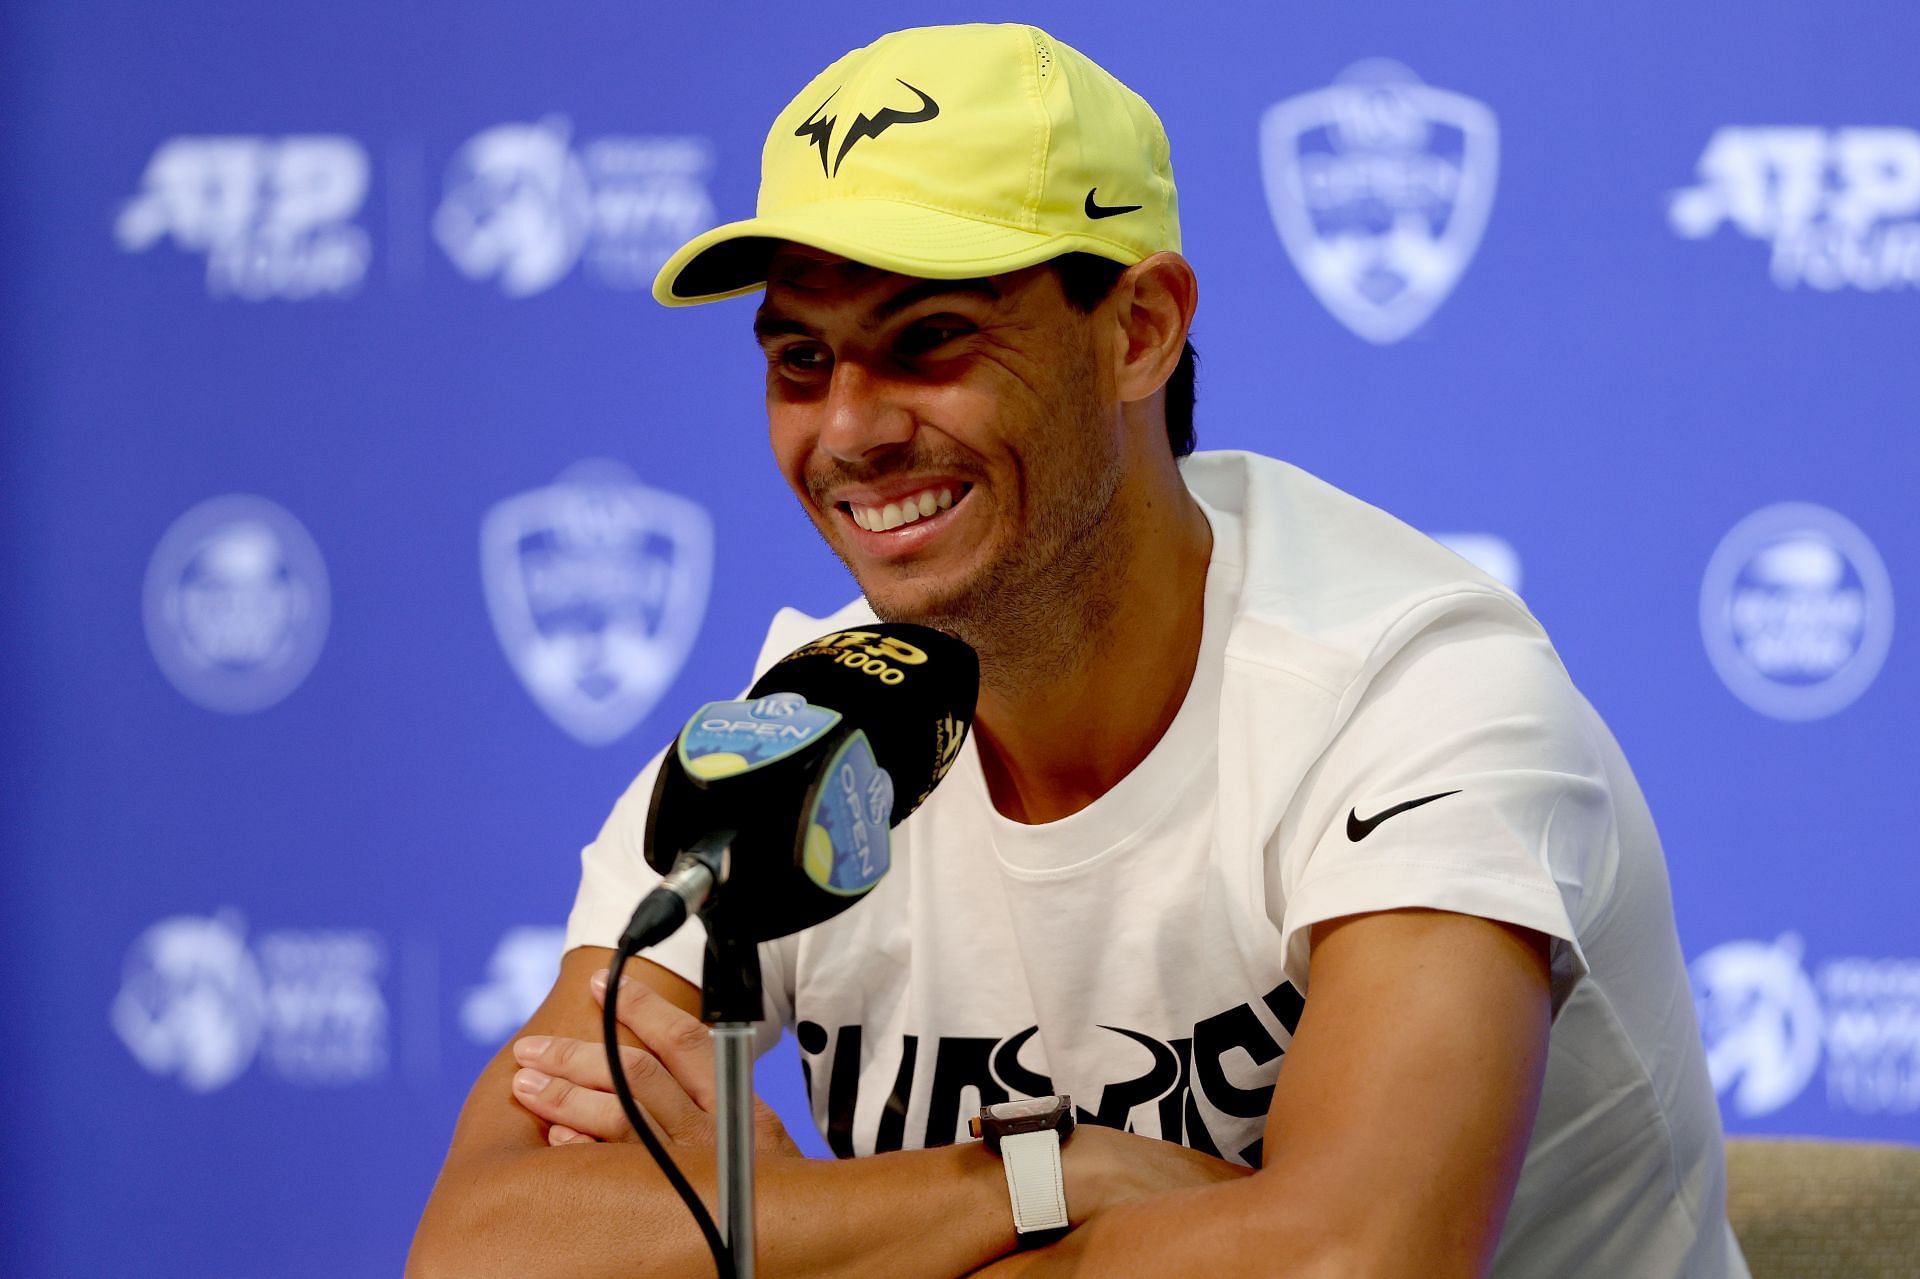 Rafael Nadal speaking to the media ahead of the 2022 Cincinnati Masters.